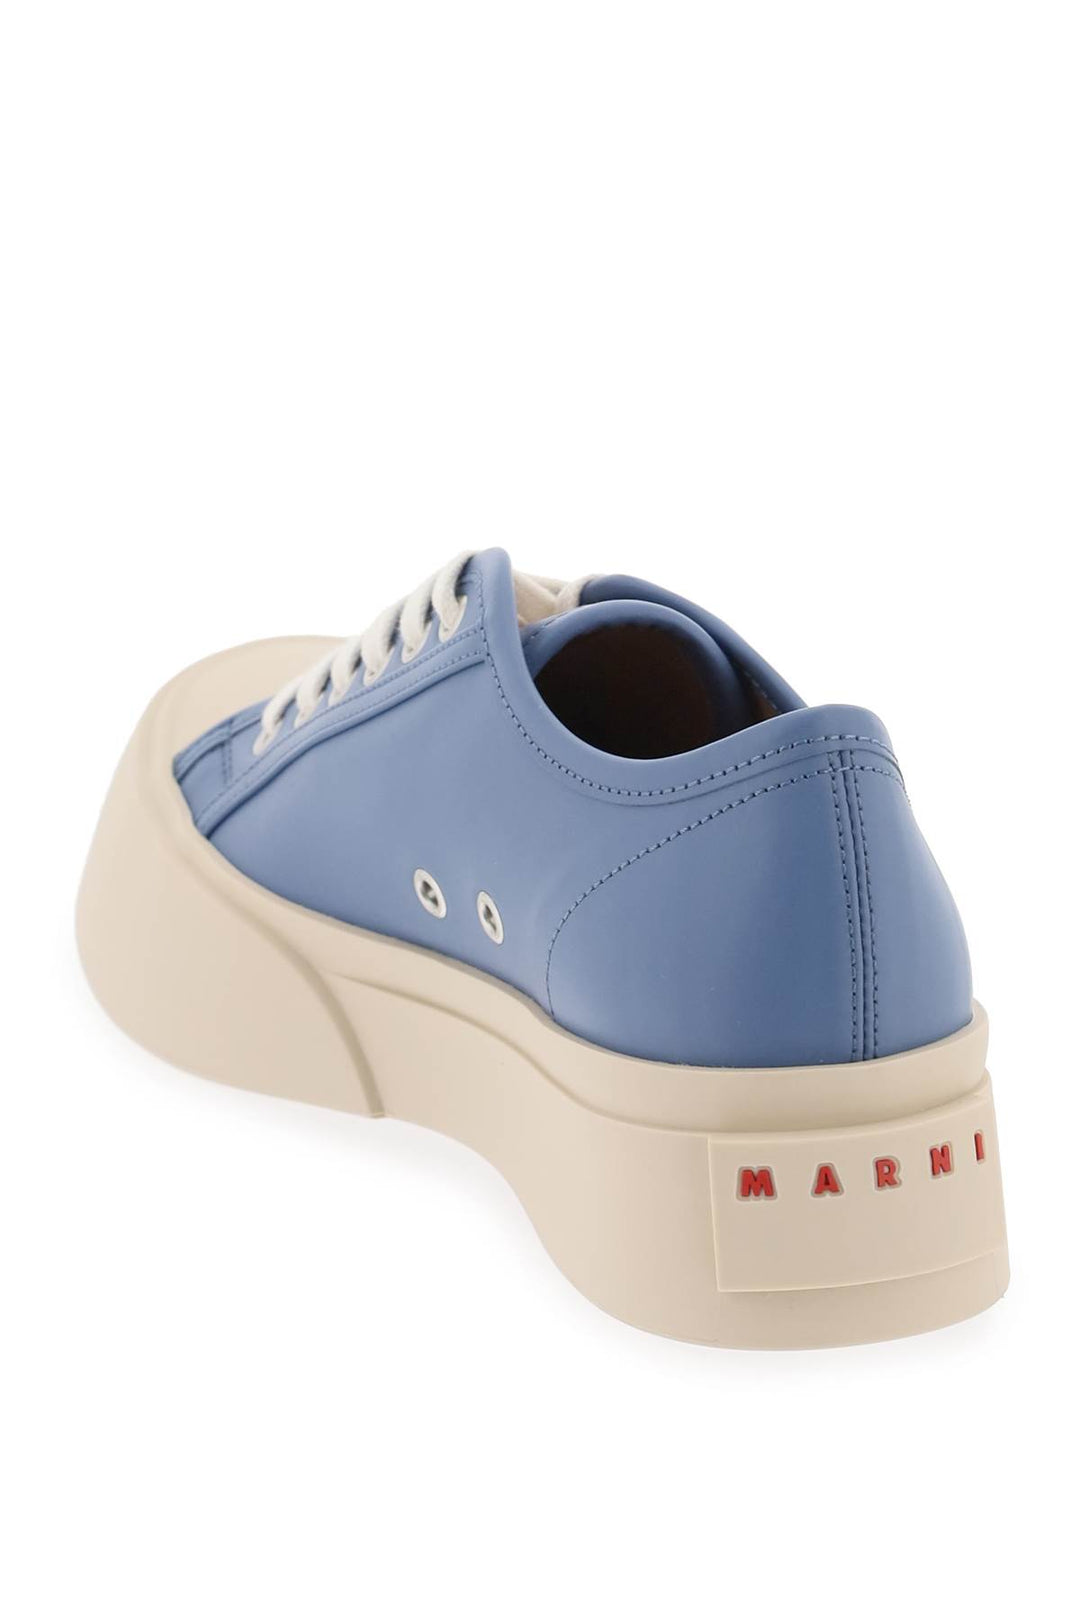 Marni Leather Pablo Sneakers   Blu